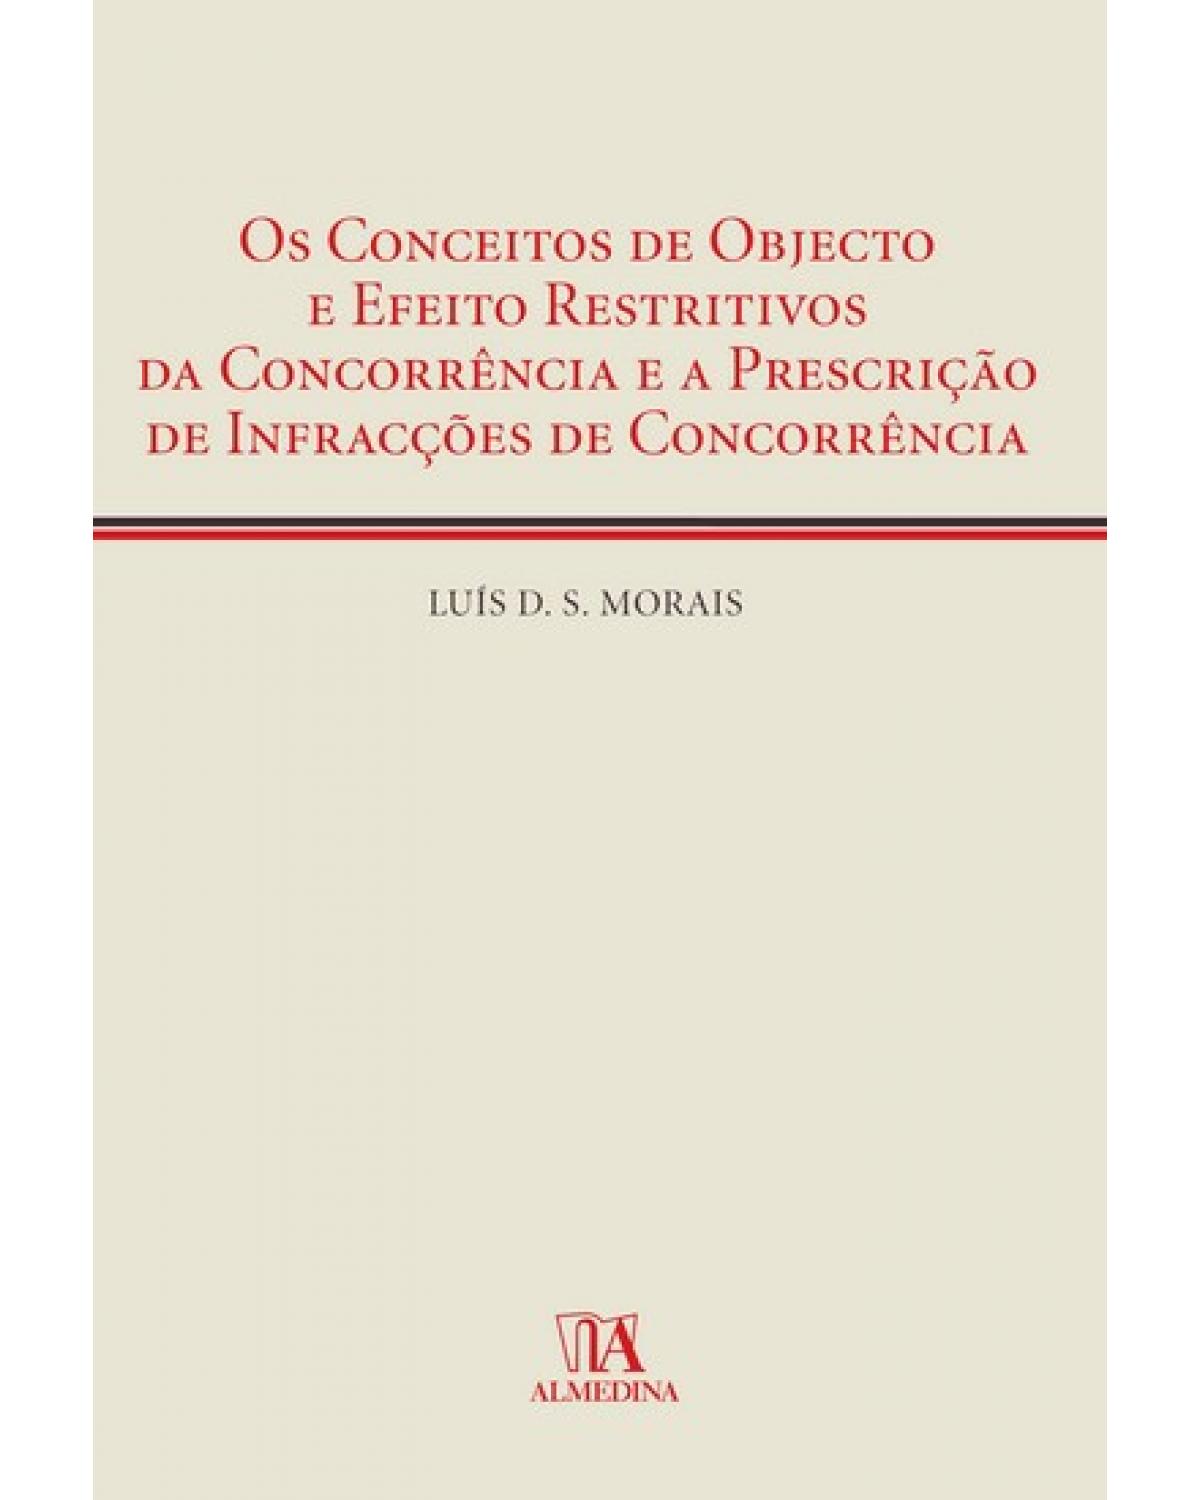 Os conceitos de objecto e efeito restritivos da concorrência e a prescrição de infracções de concorrência - 1ª Edição | 2009